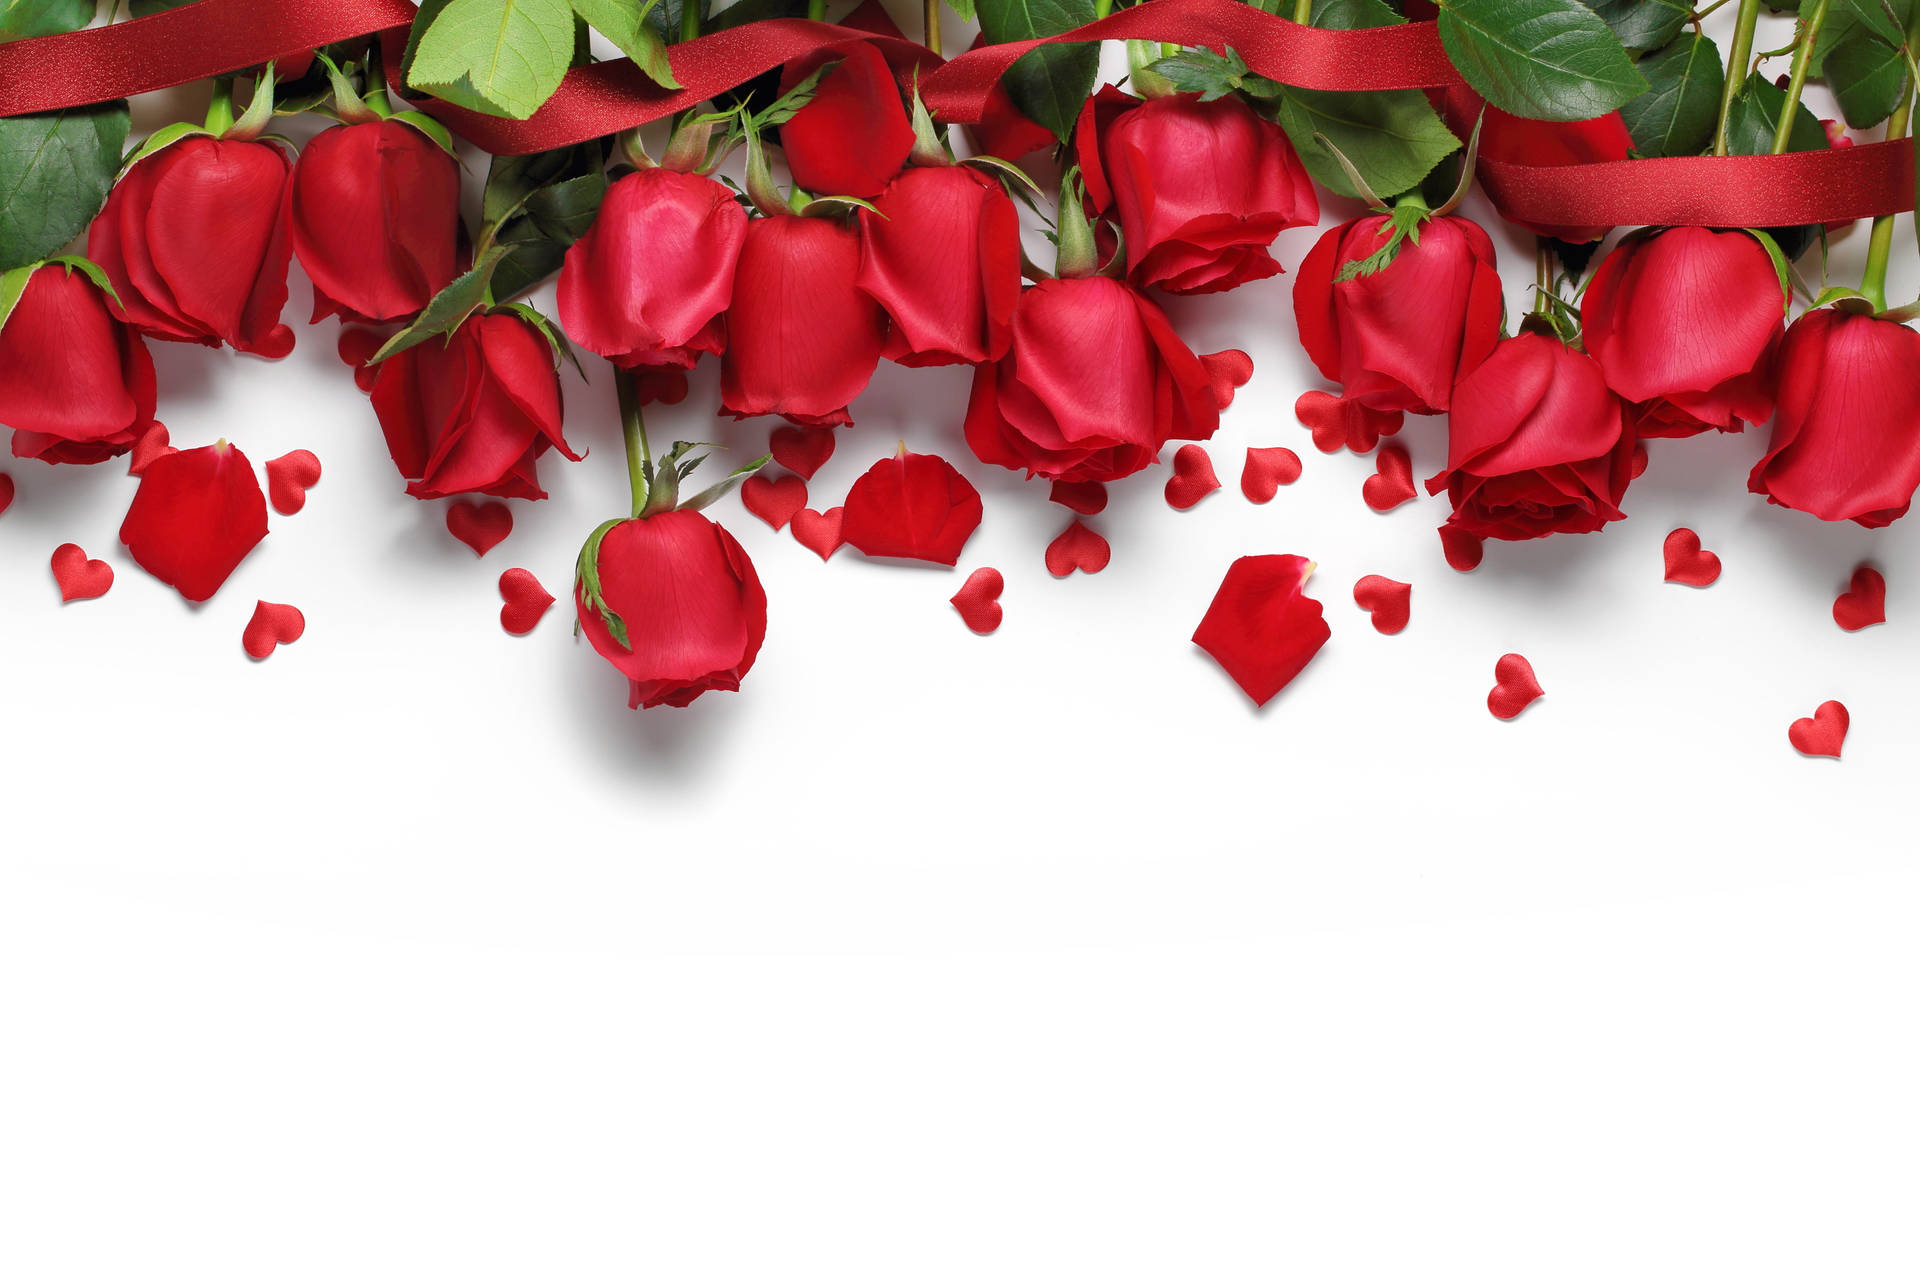 Red Roses Heart Petals